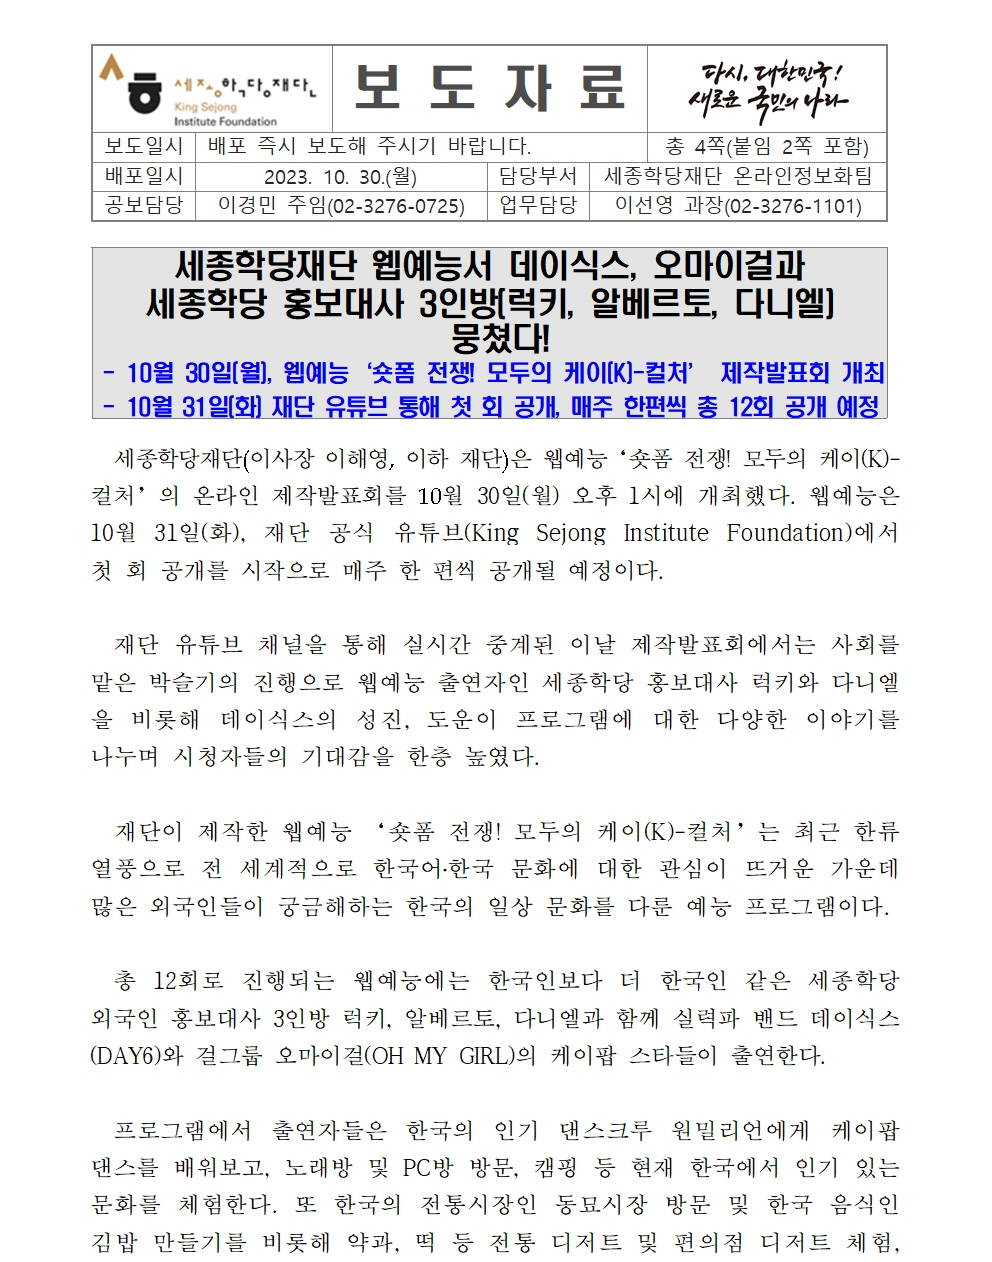 세종학당재단 웹예능 ‘숏폼 전쟁! 모두의 케이(K)-컬처’ 제작발표회 및 첫 공개(보도자료)001